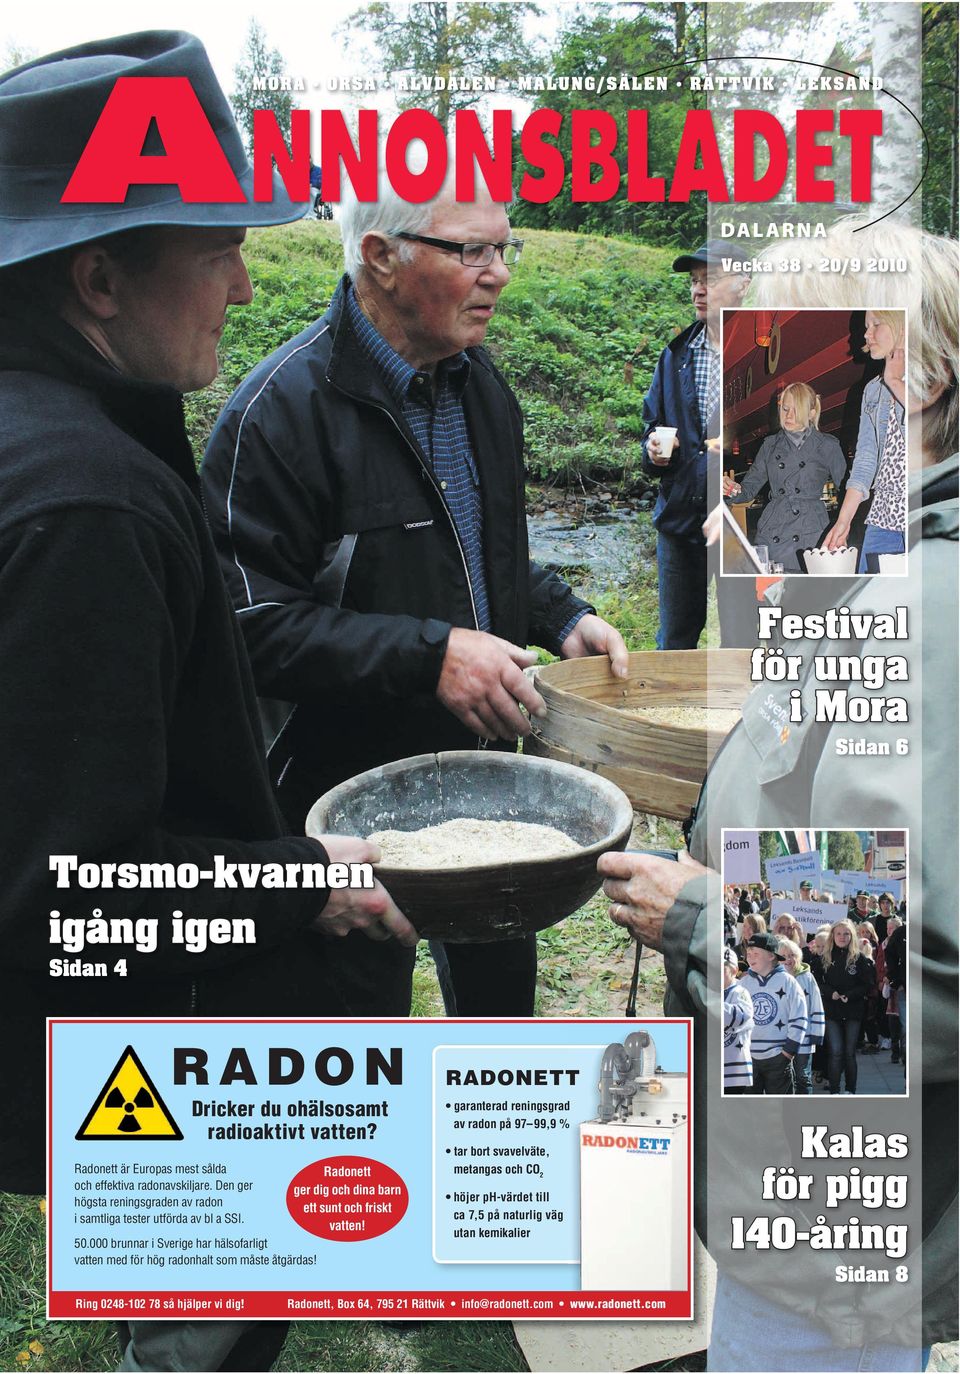 Radonett ger dig och dina barn ett sunt och friskt vatten! 50.000 brunnar i Sverige har hälsofarligt vatten med för hög radonhalt som måste åtgärdas! Ring 0248-102 78 så hjälper vi dig!